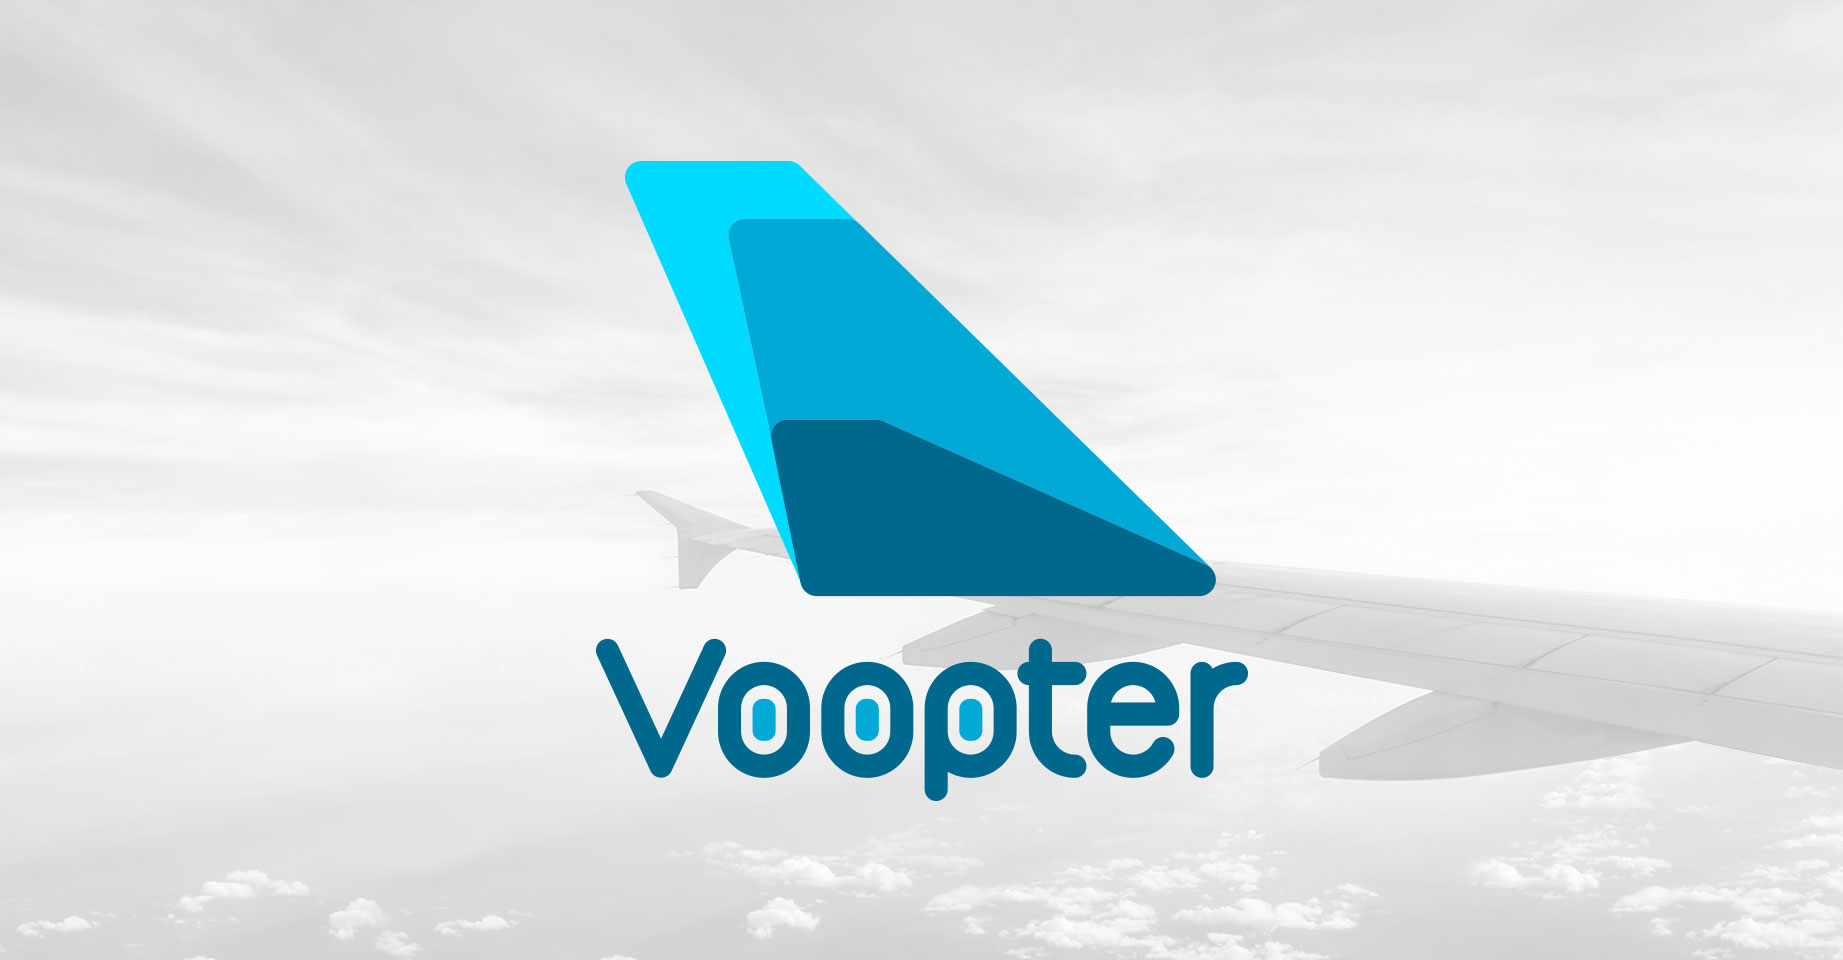 Passagens aéreas baratas - Buscador gratuito • Voopter